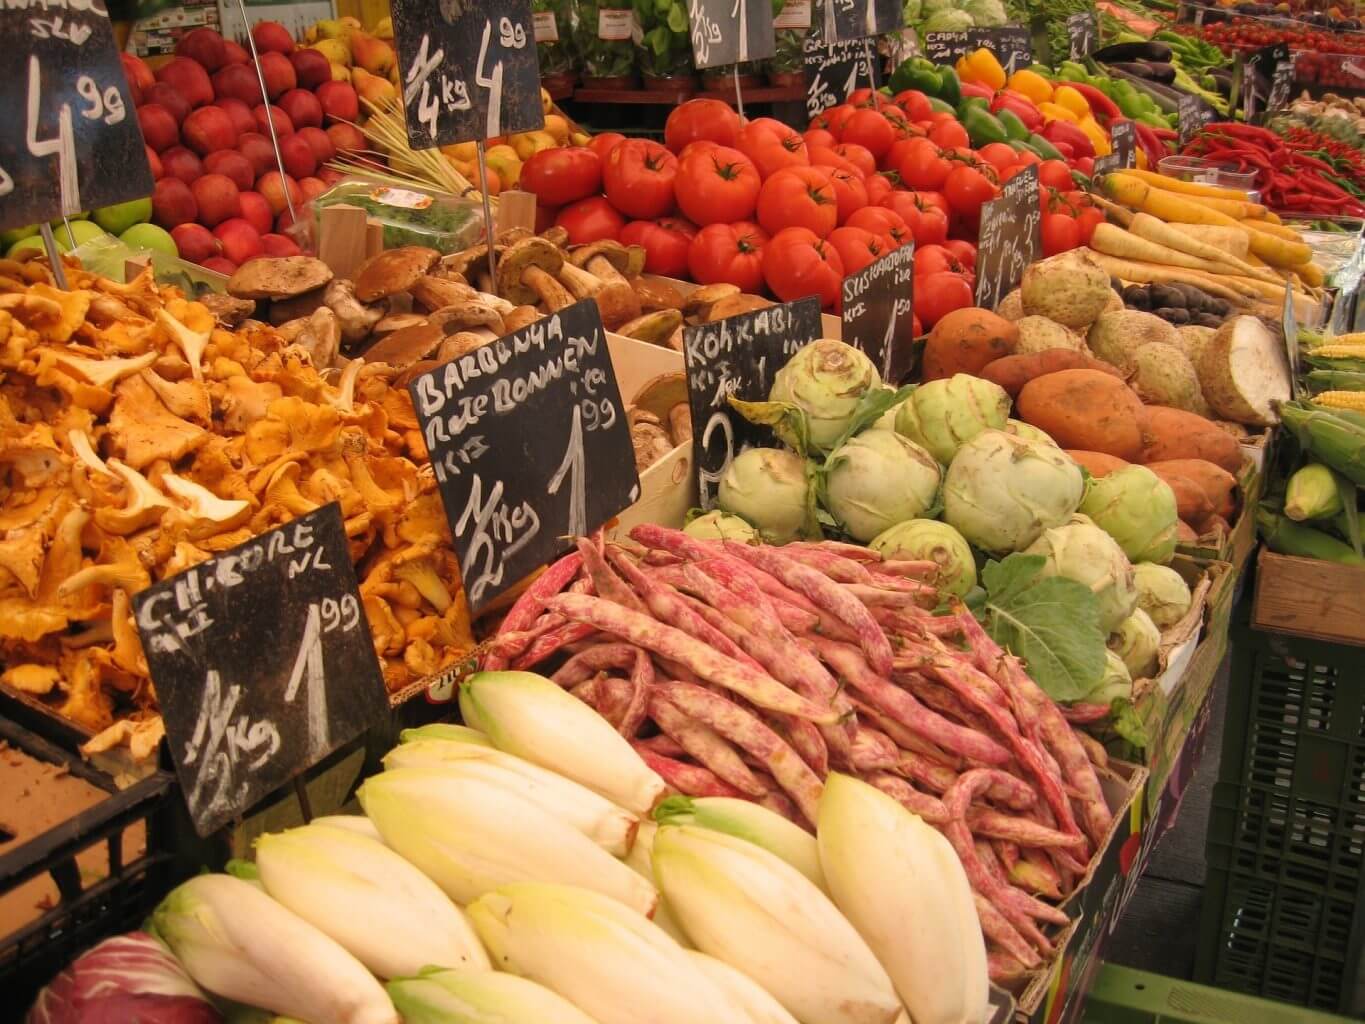 Eine große Auswahl an frischem Obst und Gemüse in Holzkisten mit Preisschildern.